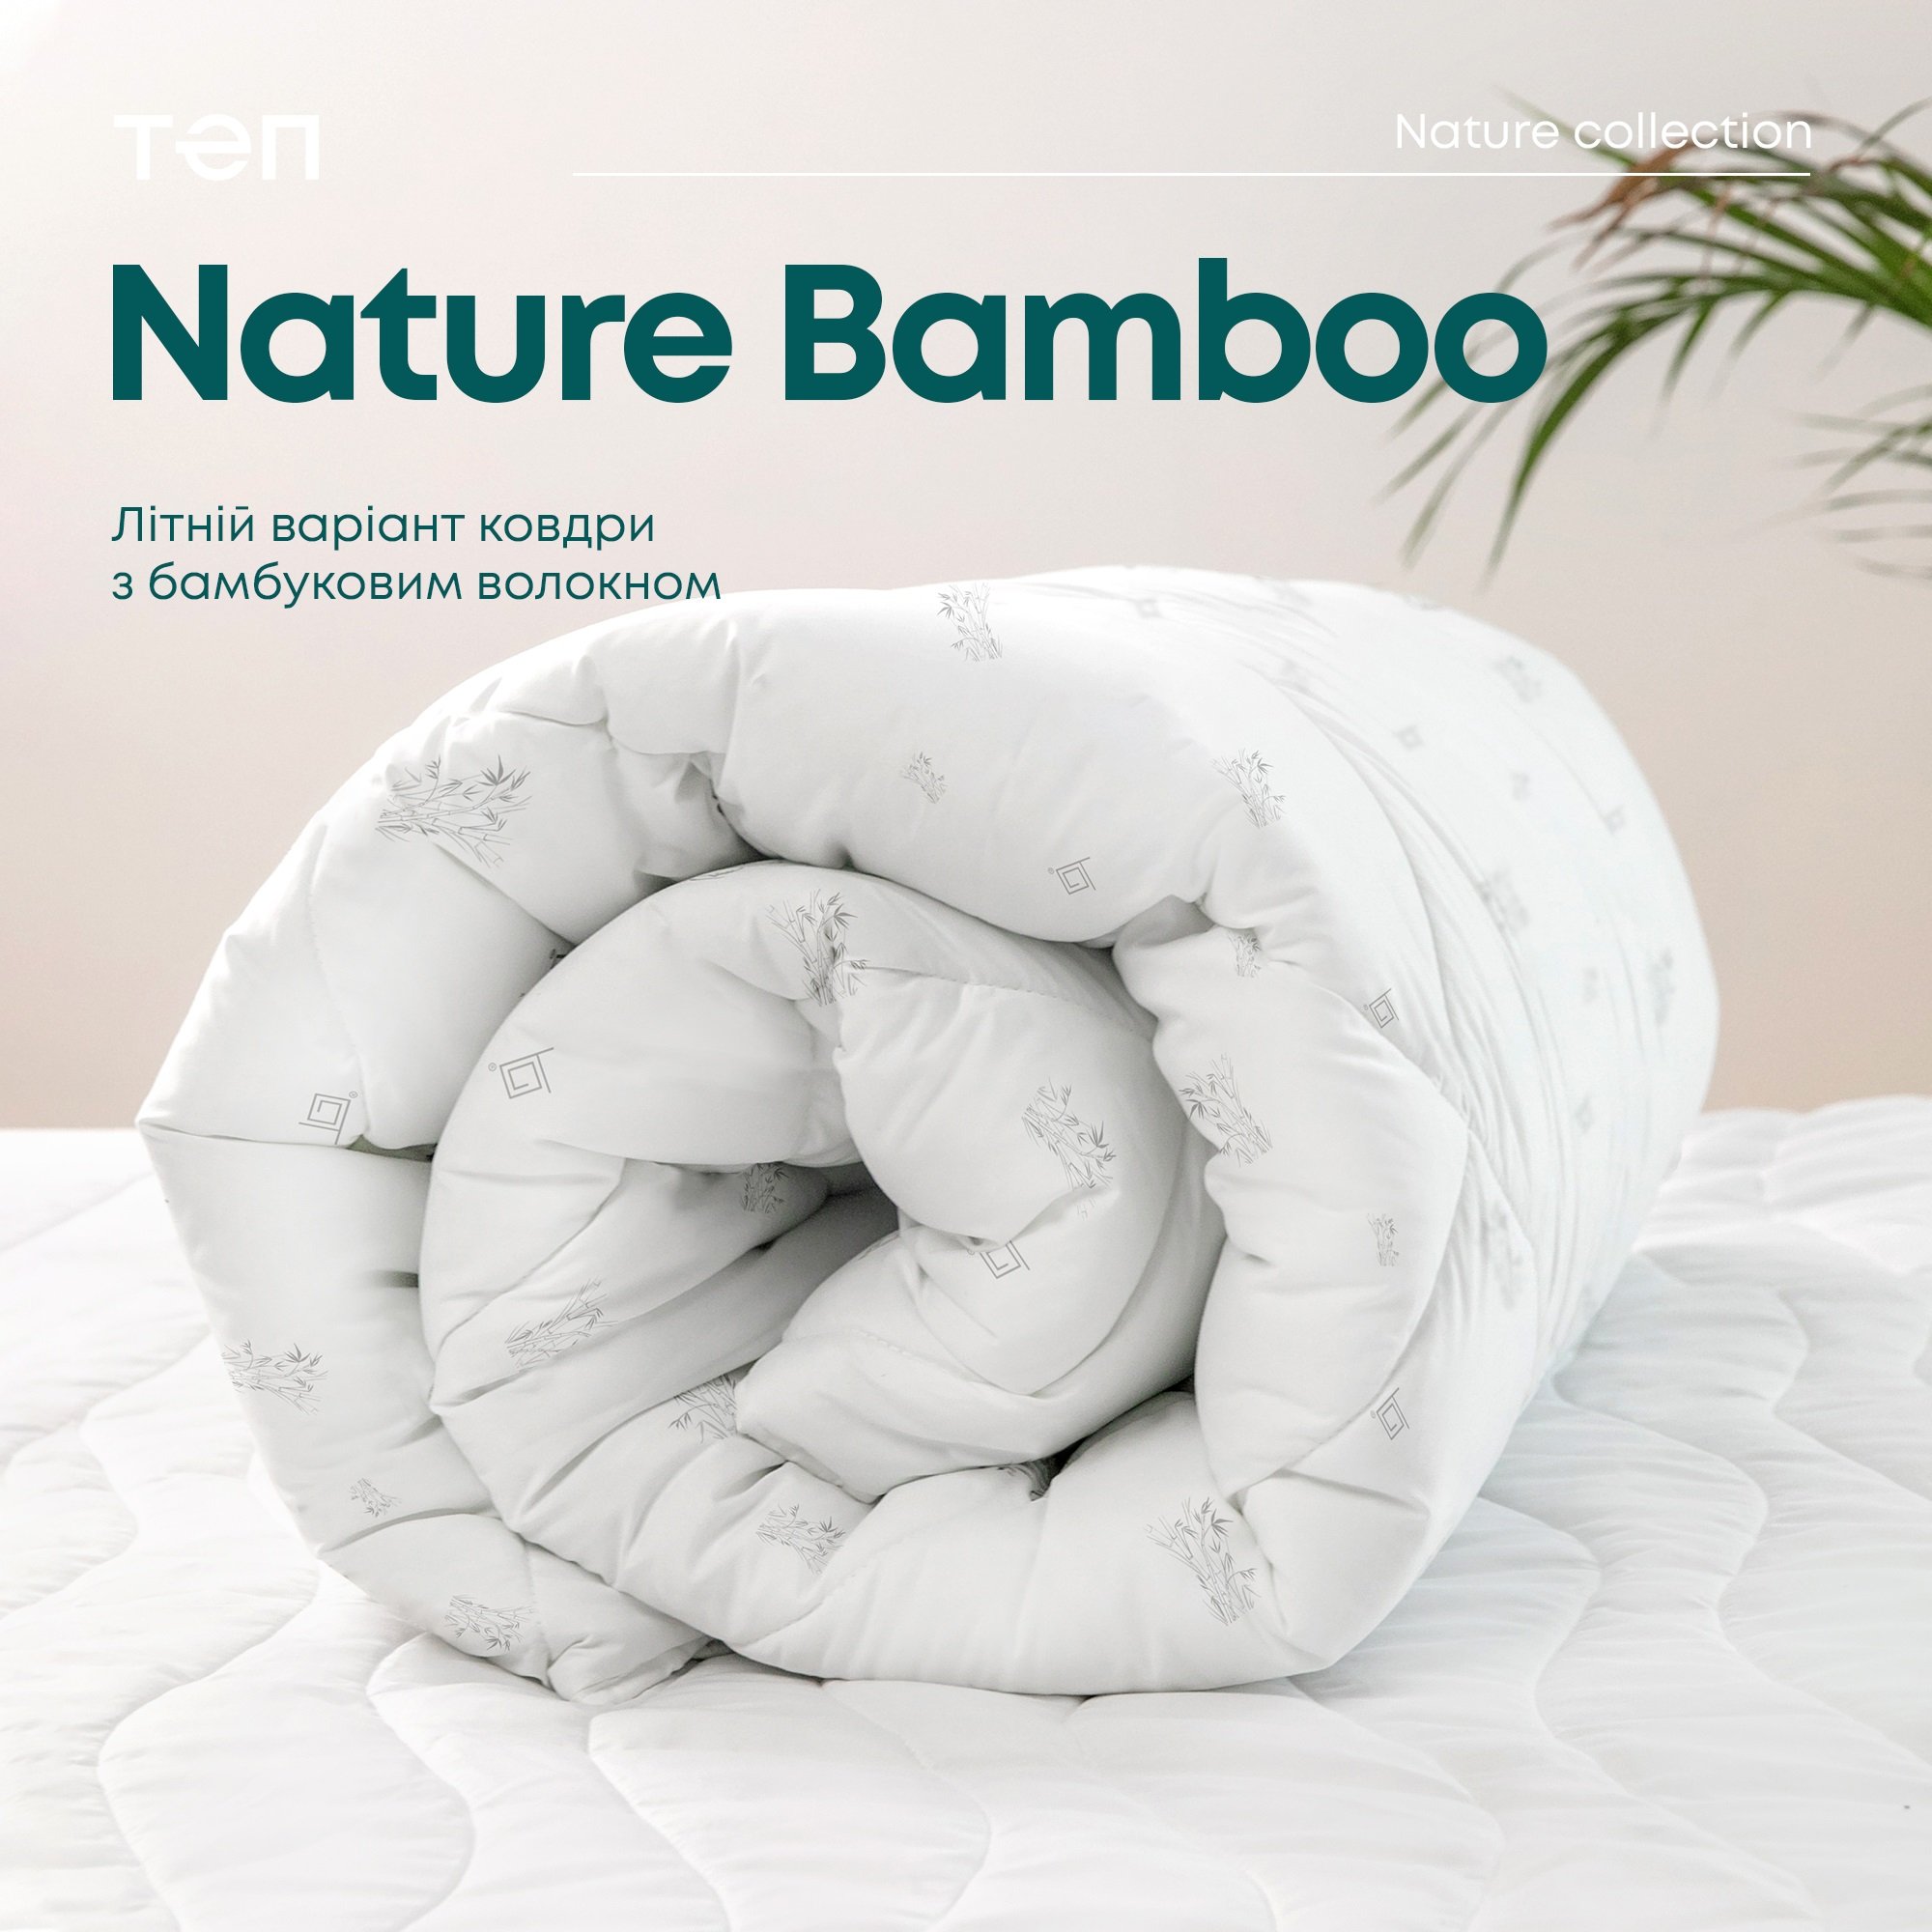 Одеяло ТЕП Природа Membrana Print Bamboo Summer Line 150х210 см белое (1-03997_00000) - фото 7